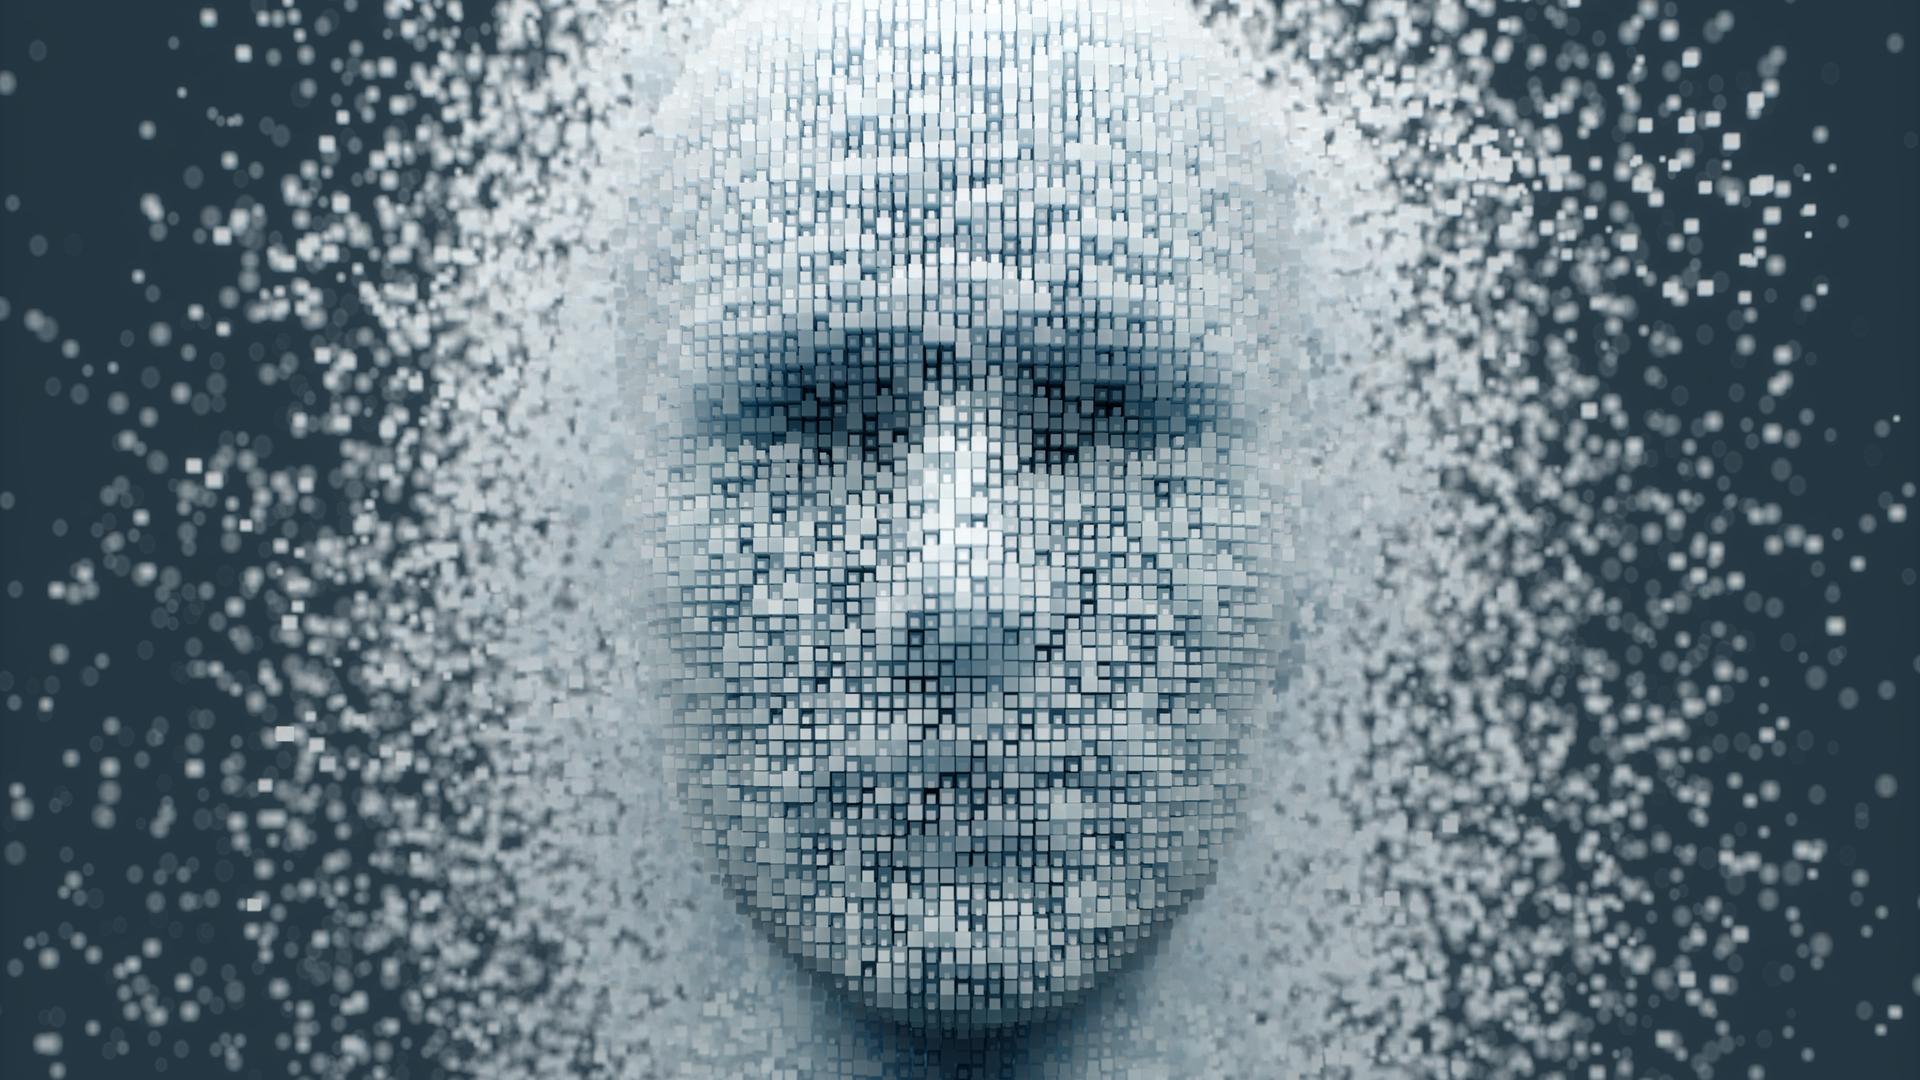 3D-auflösender menschlicher Kopf aus würfelförmigen Partikeln